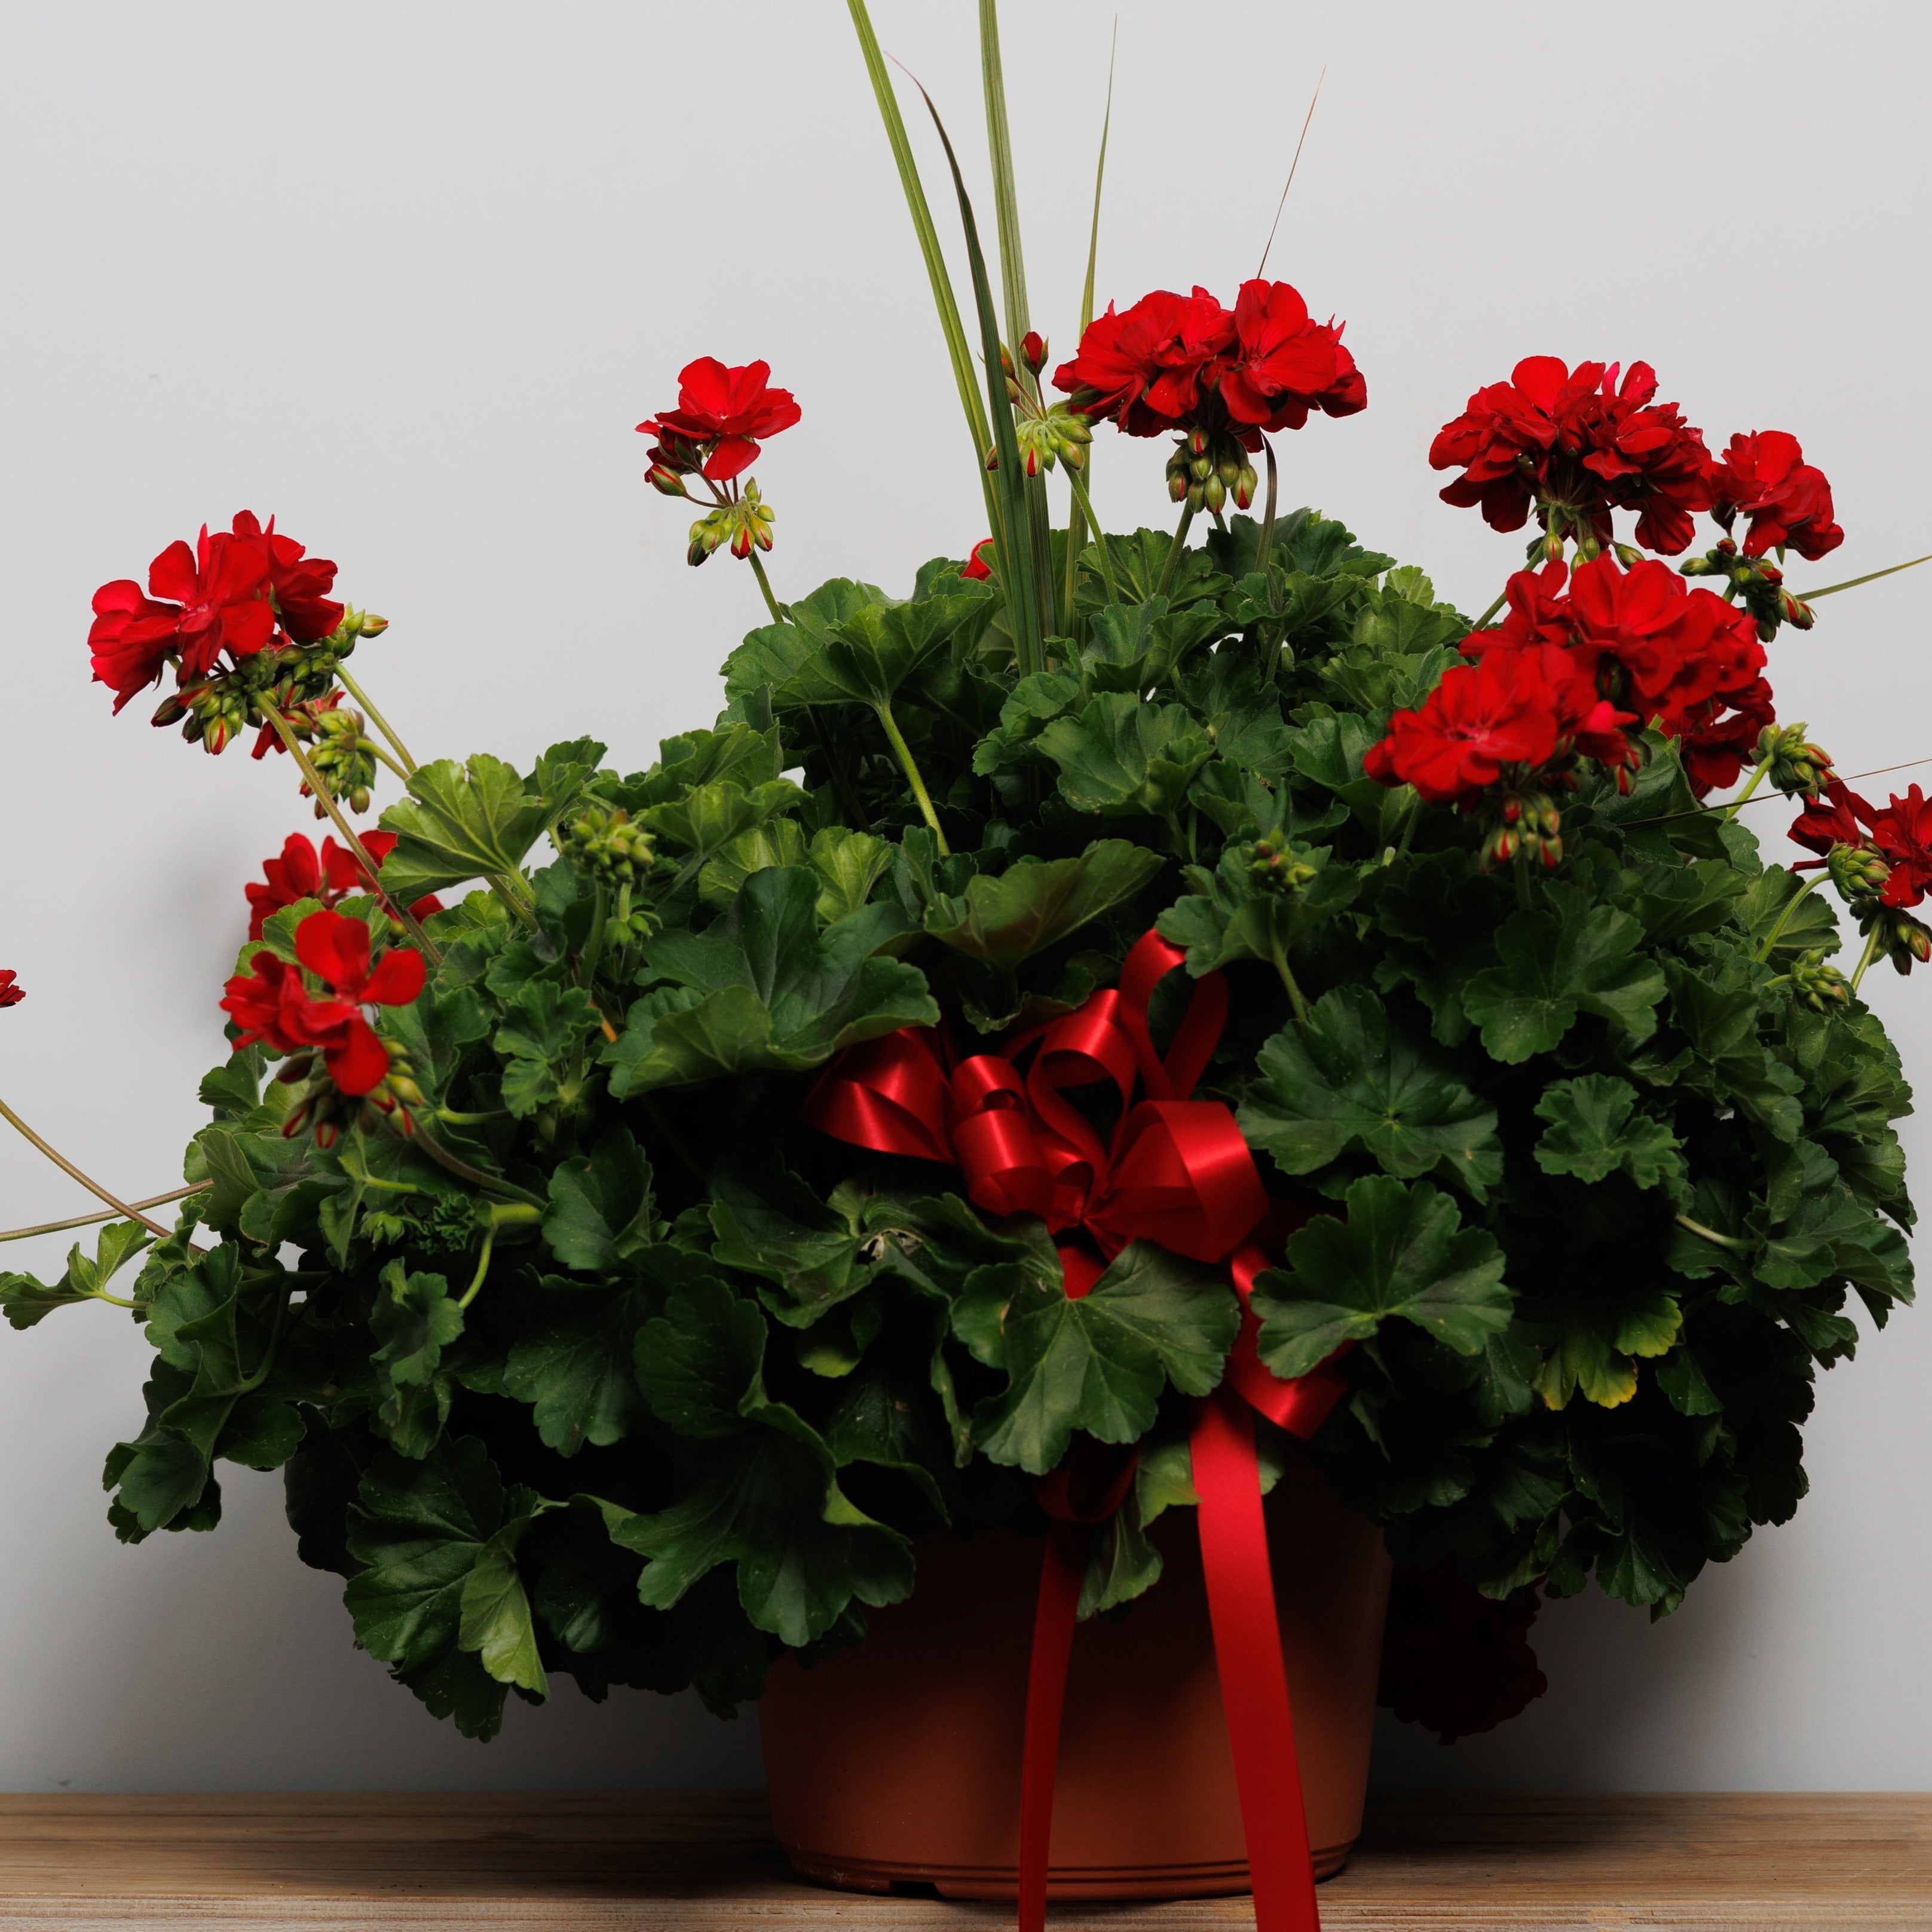 A red geranium tub.